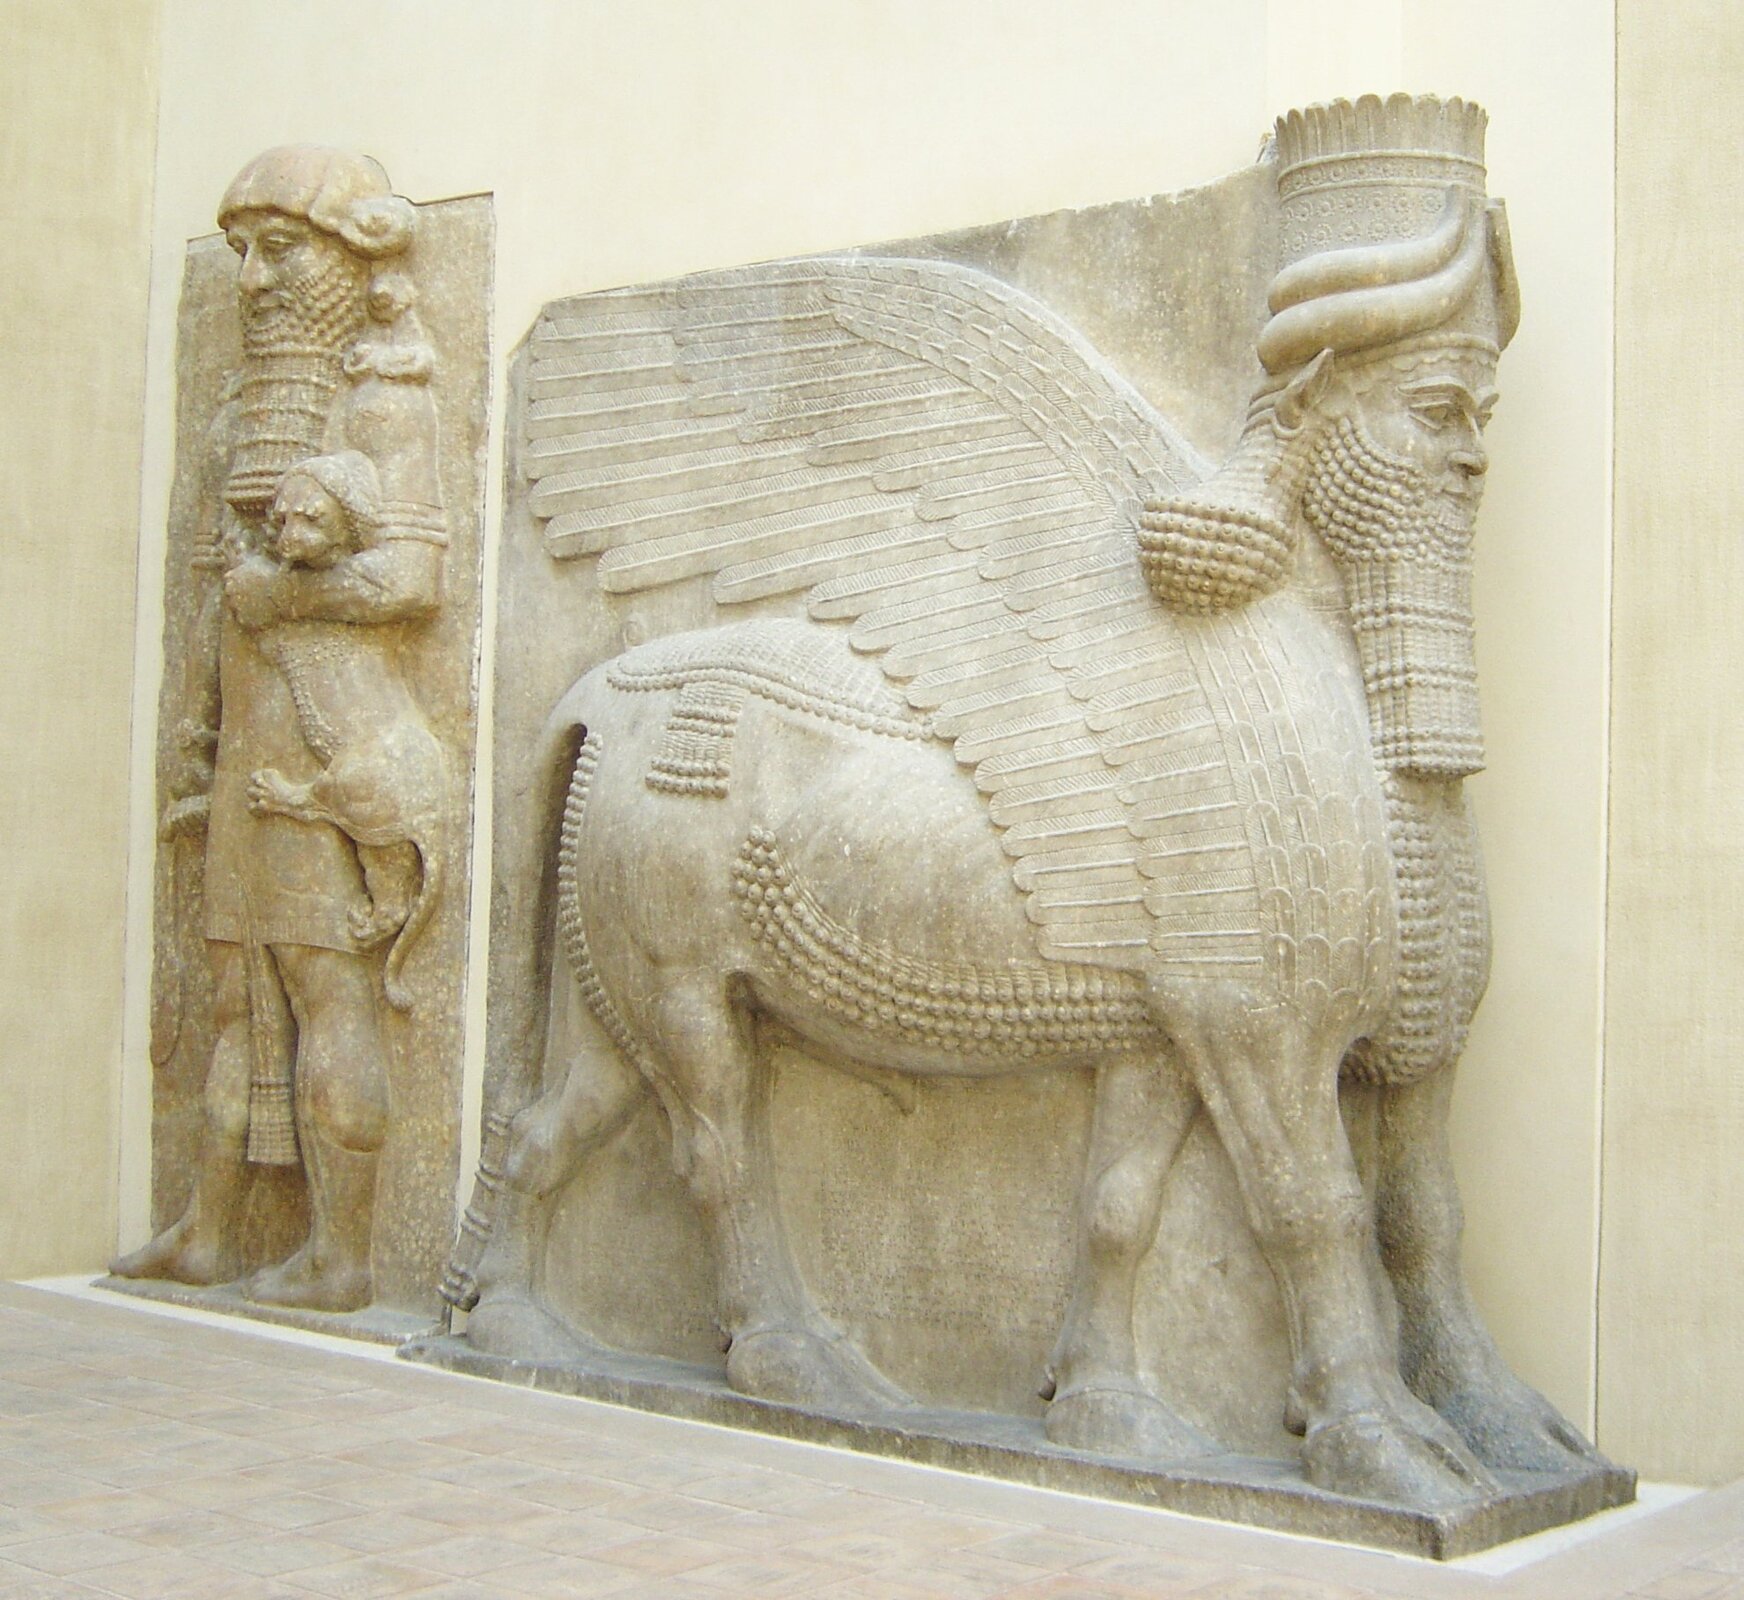 Ilustracja przedstawia dwie płaskorzeźby z bramy pałacu Sargona II. Pierwsza ukazuje lamassu, czyli skrzydlatego byka z ludzką głową uosabiającego ducha opiekuńczego. Jego ciało jest masywne, głowa sztywna. Posiada pięć nóg. Kolejna płaskorzeźba ukazuje Gilgamesza, poskramiającego lwa. Smukła postać z długą brodą w lewym ręki trzyma za głowę niewielkiego lwa. Głowa i tułów Gilgamesza przedstawione są centralnie, a nogi z boku. Ubrany jest w tunikę. 